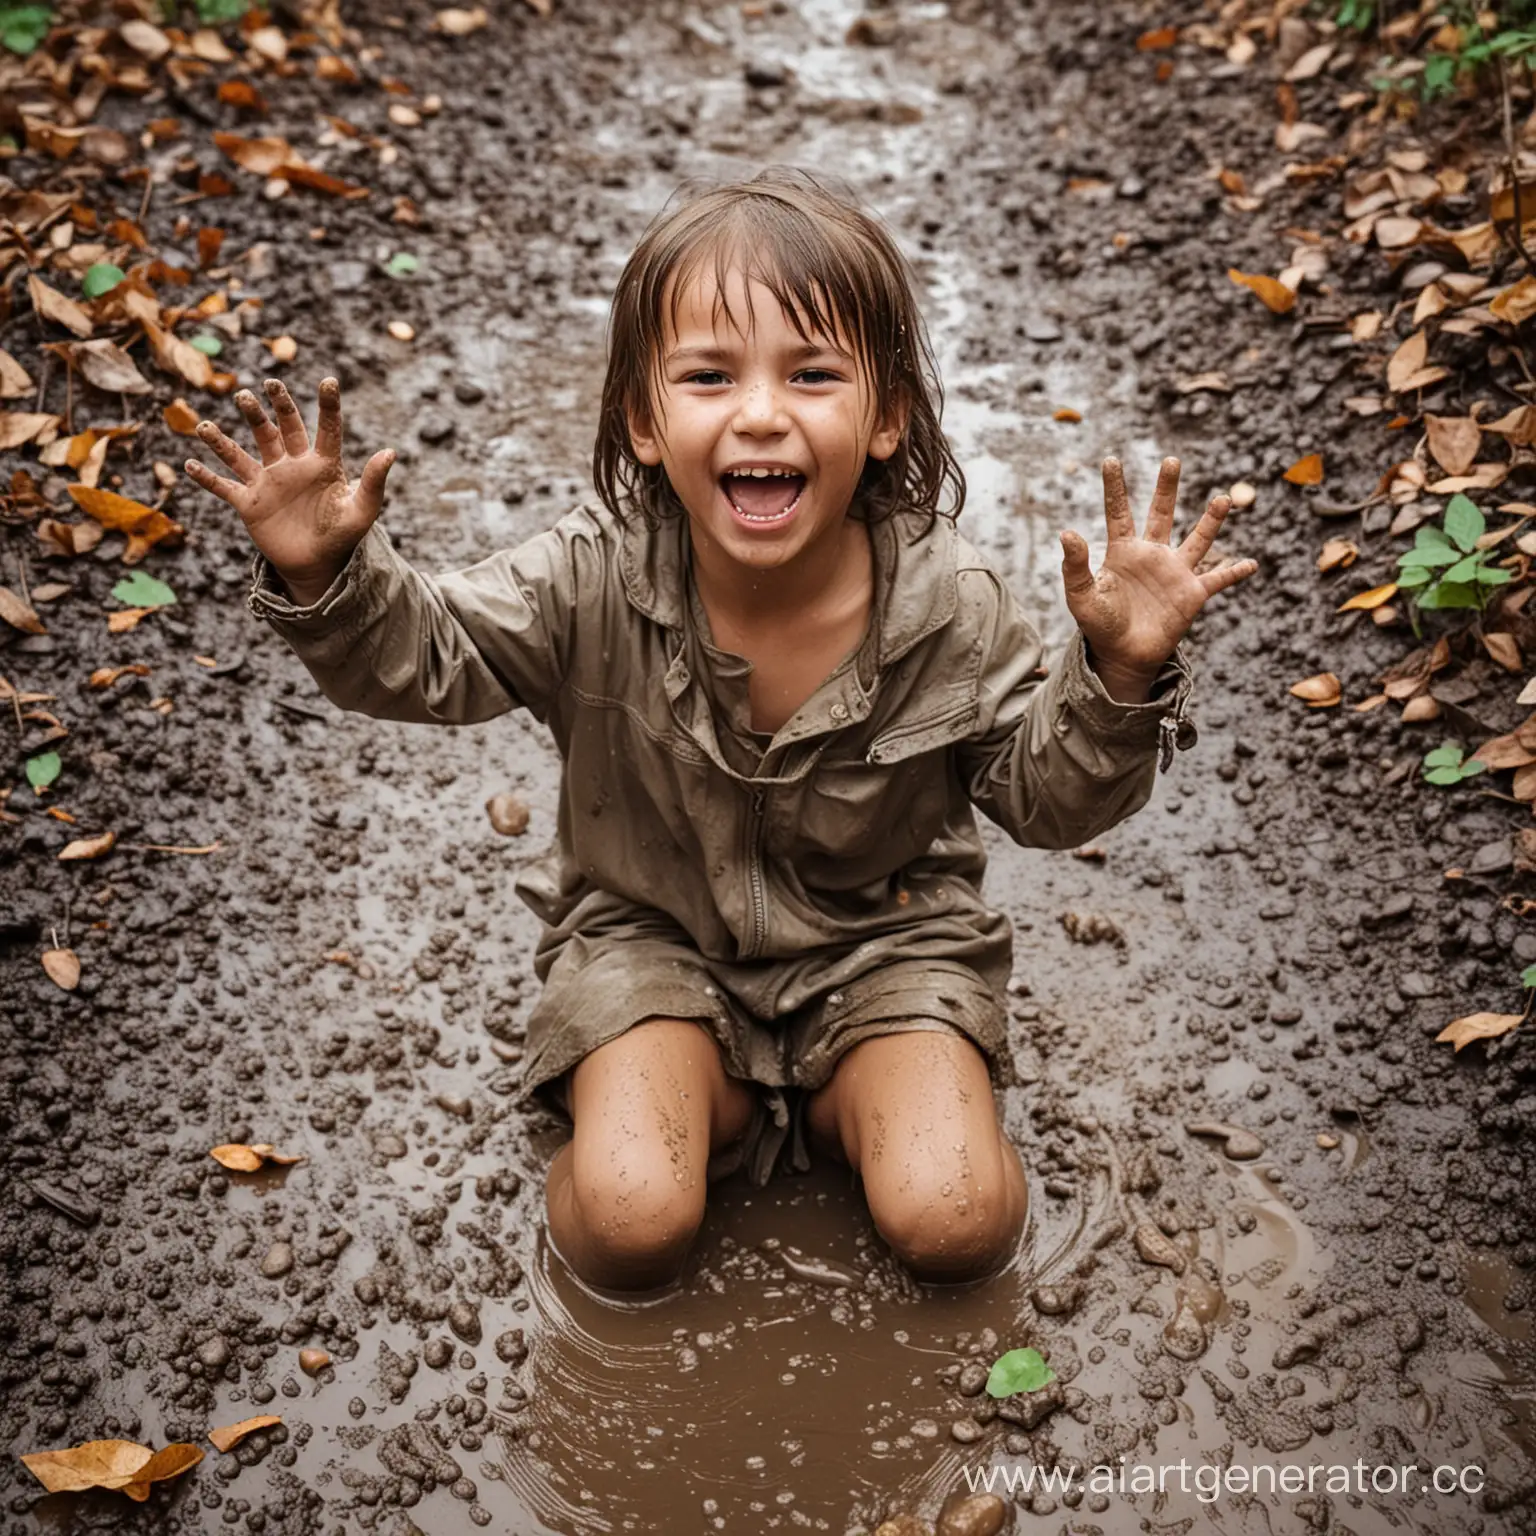 девочка ребенок сидит в грязной луже, вся ее одежда, руки и лицо в грязи,вокруг брызки и листья,ребенок смеется и весь грязный и мокрый, пять пальцев на руках у ребенка